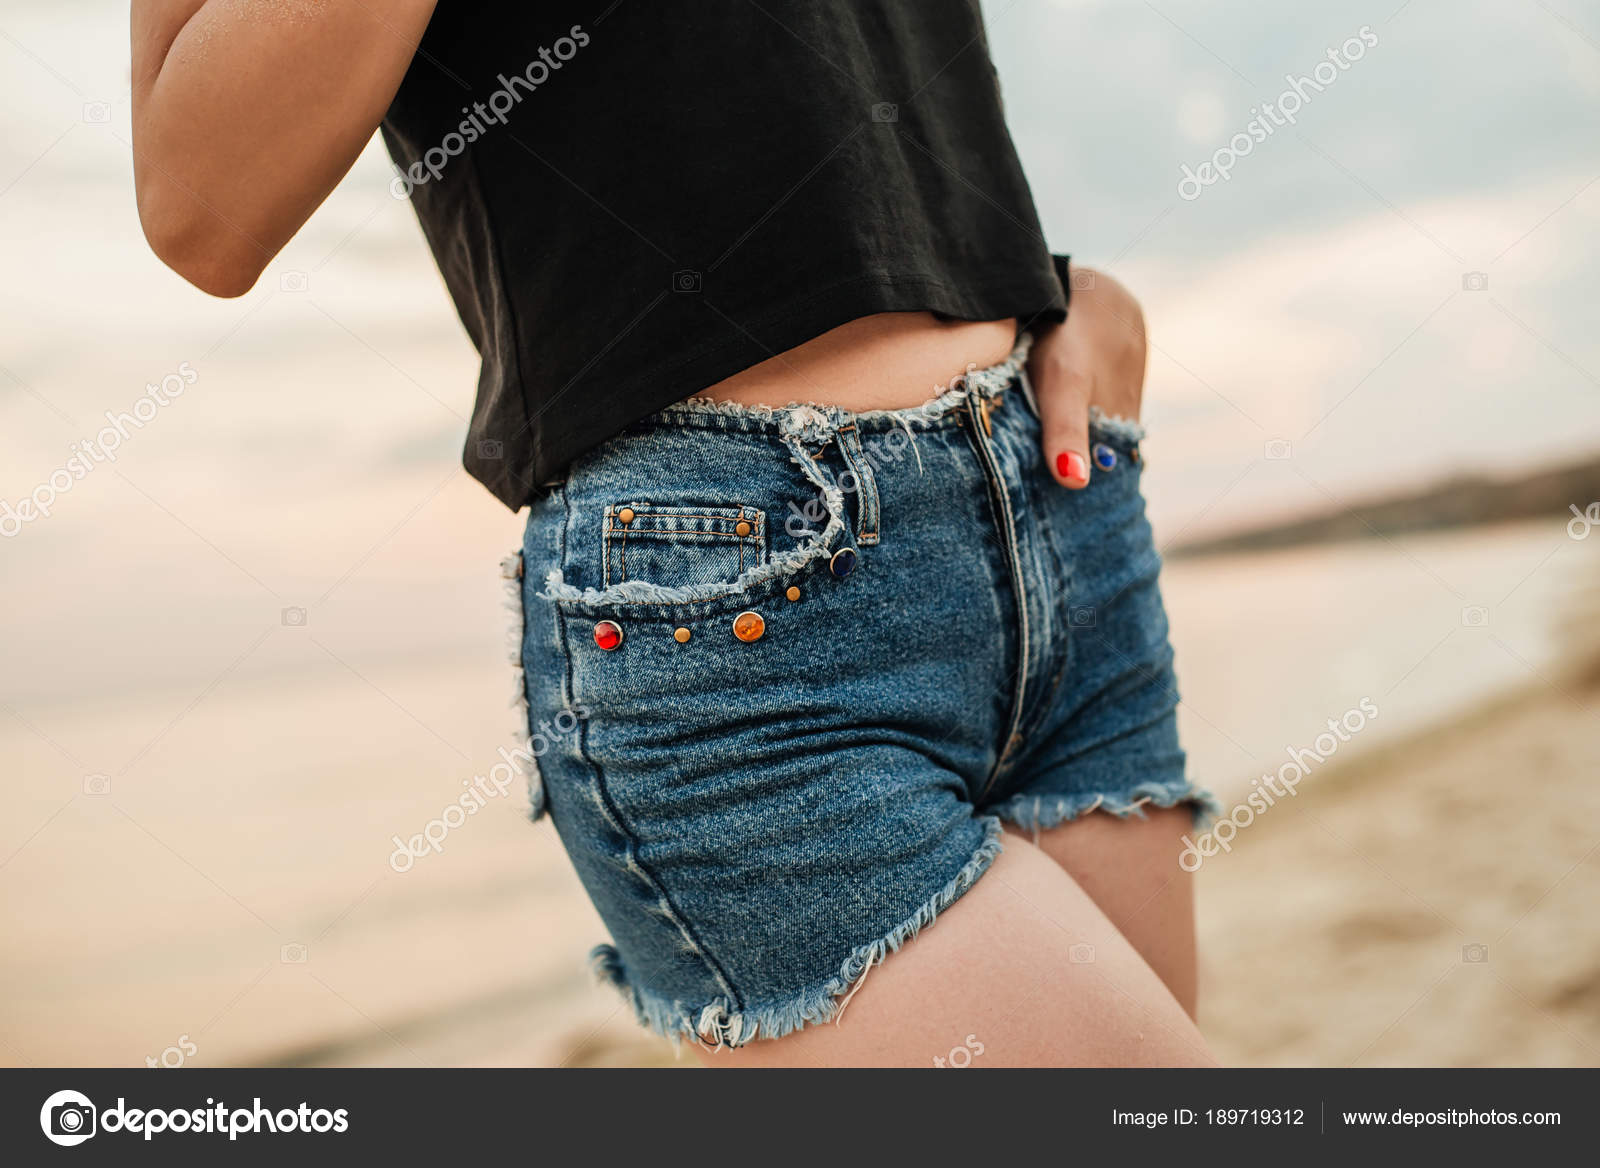 short jeans for girl